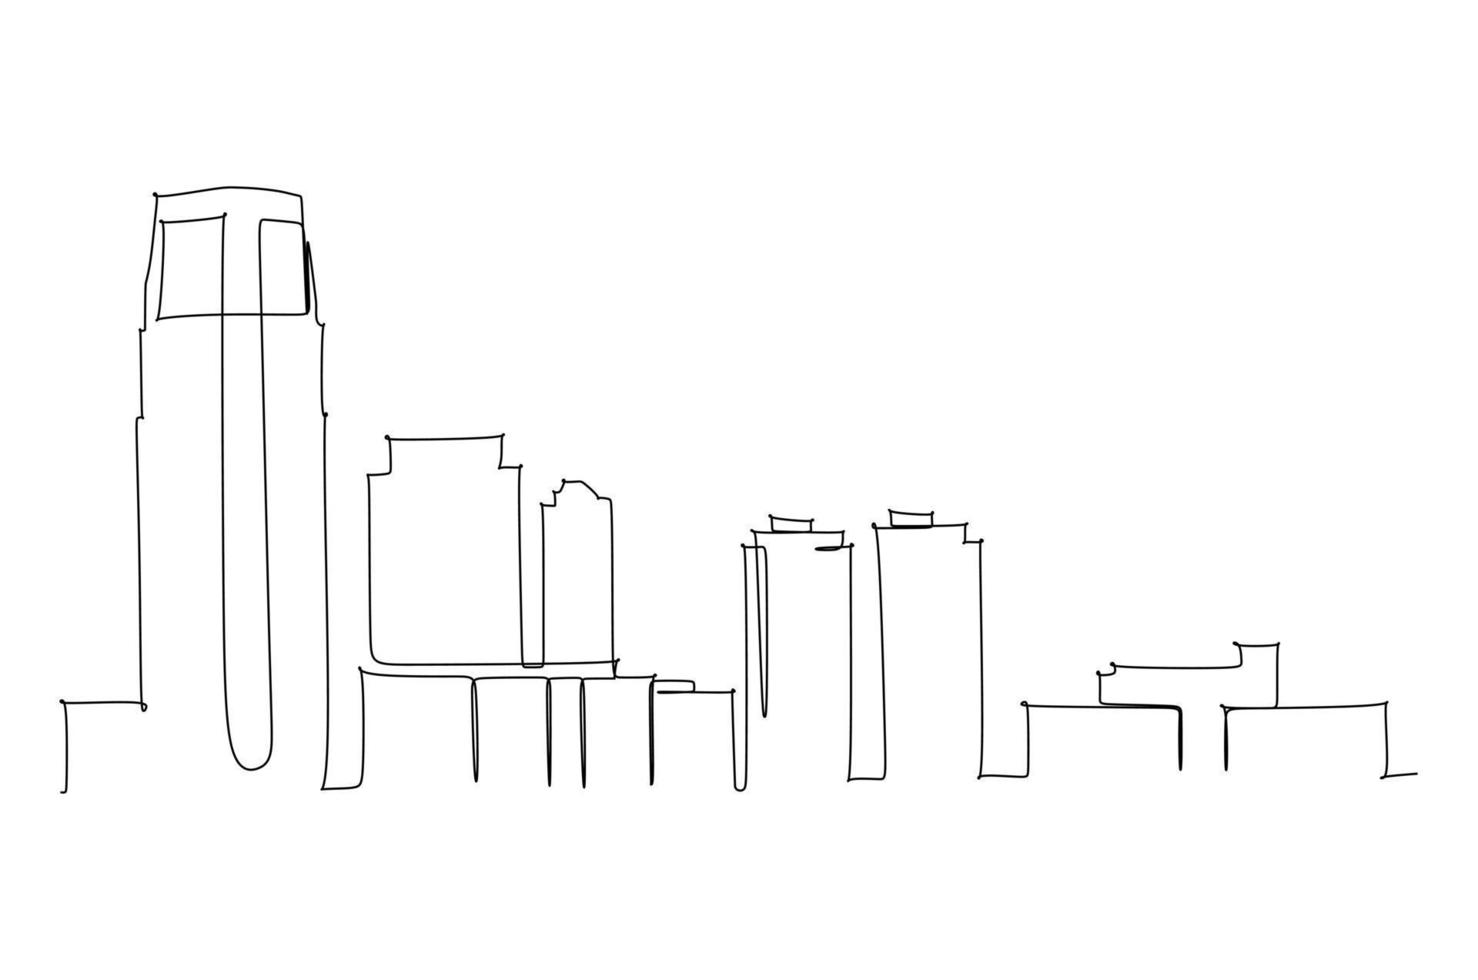 durchgehende Strichzeichnung der Skyline einer Metropole. einfache Strichzeichnung für Wanddekoration oder Illustration vektor